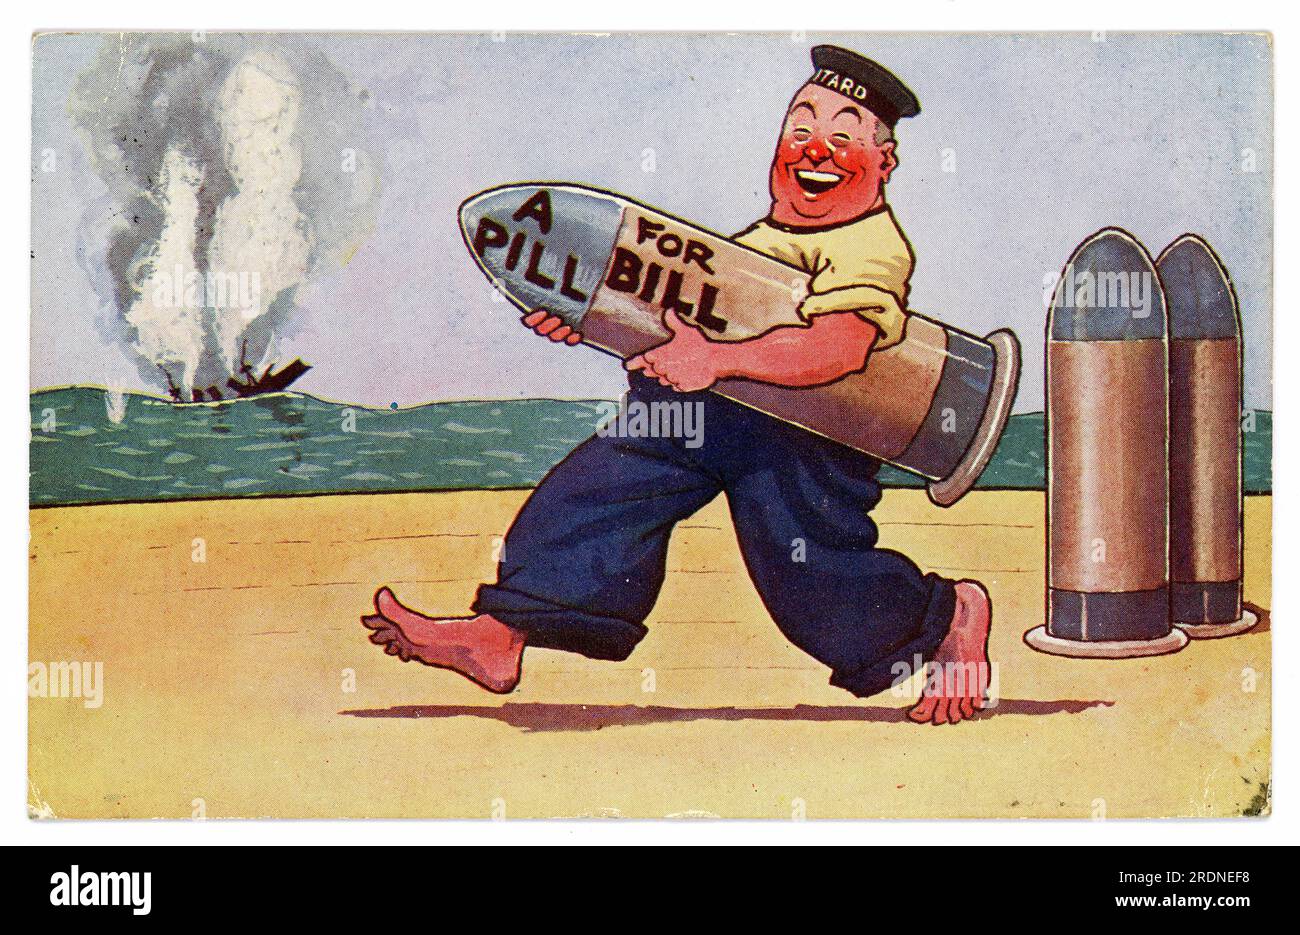 Originale Comic-Postkarte aus dem WW1. Jahrhundert, Seemann mit einer Rakete, Pille für Bill, die Postkarte ist ein beliebtes Thema - Anti-Kaiser Wilhelm II. (Letzter deutscher Kaiser und König von Preußen) des Deutschen Reiches. Vom/veröffentlicht 1915. Stockfoto